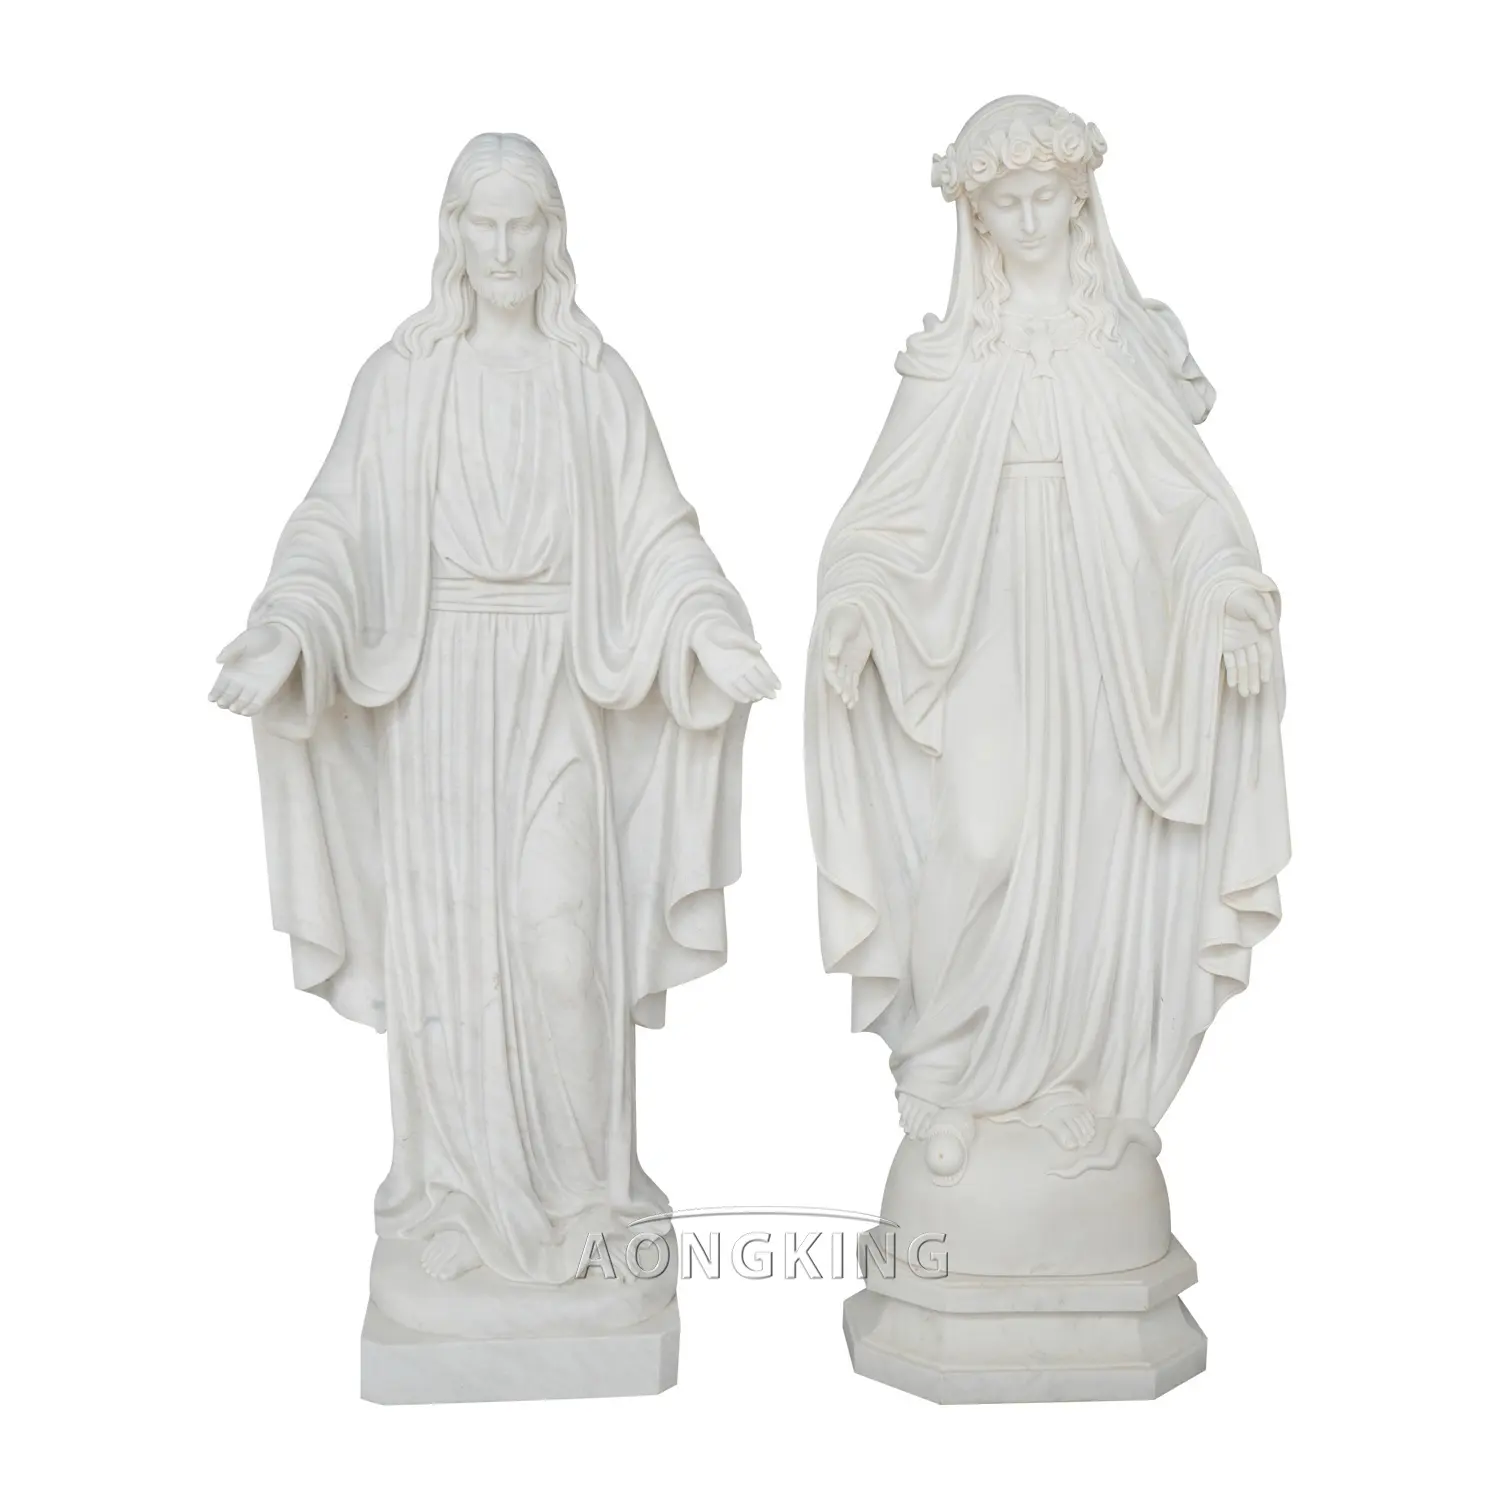 जीवन आकार खड़े वर्जिन मैरी और यीशु प्रतिमा प्राकृतिक संगमरमर की मूर्ति